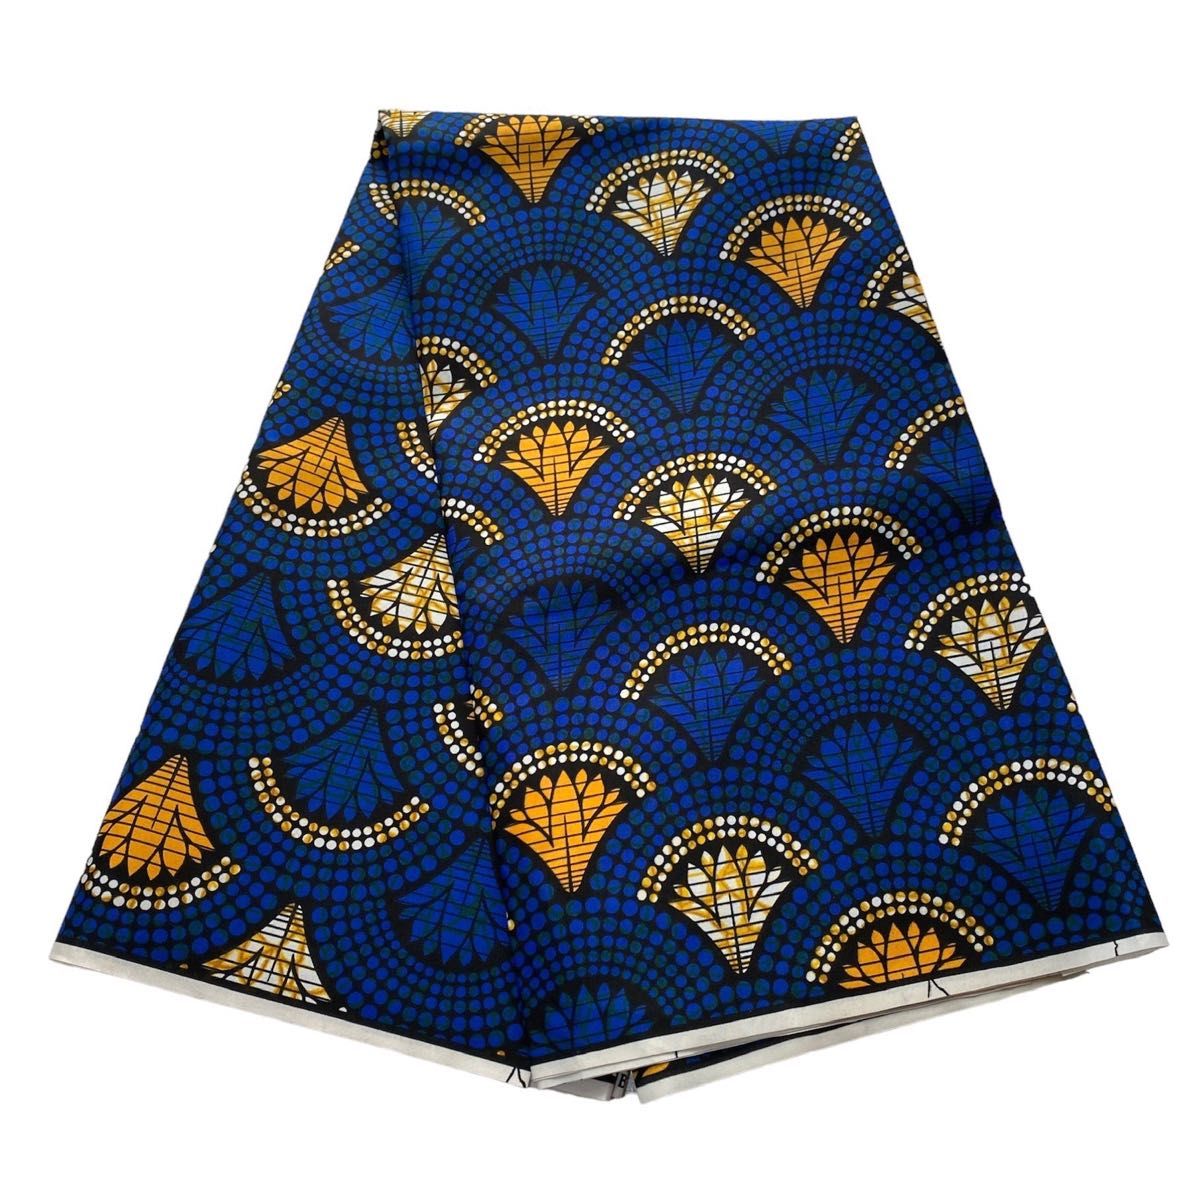 【200035】アフリカ布 生地 はぎれ ハギレ カットクロス 布 アフリカンプリント アンカラ キテンゲ ブルー 青 扇子 扇